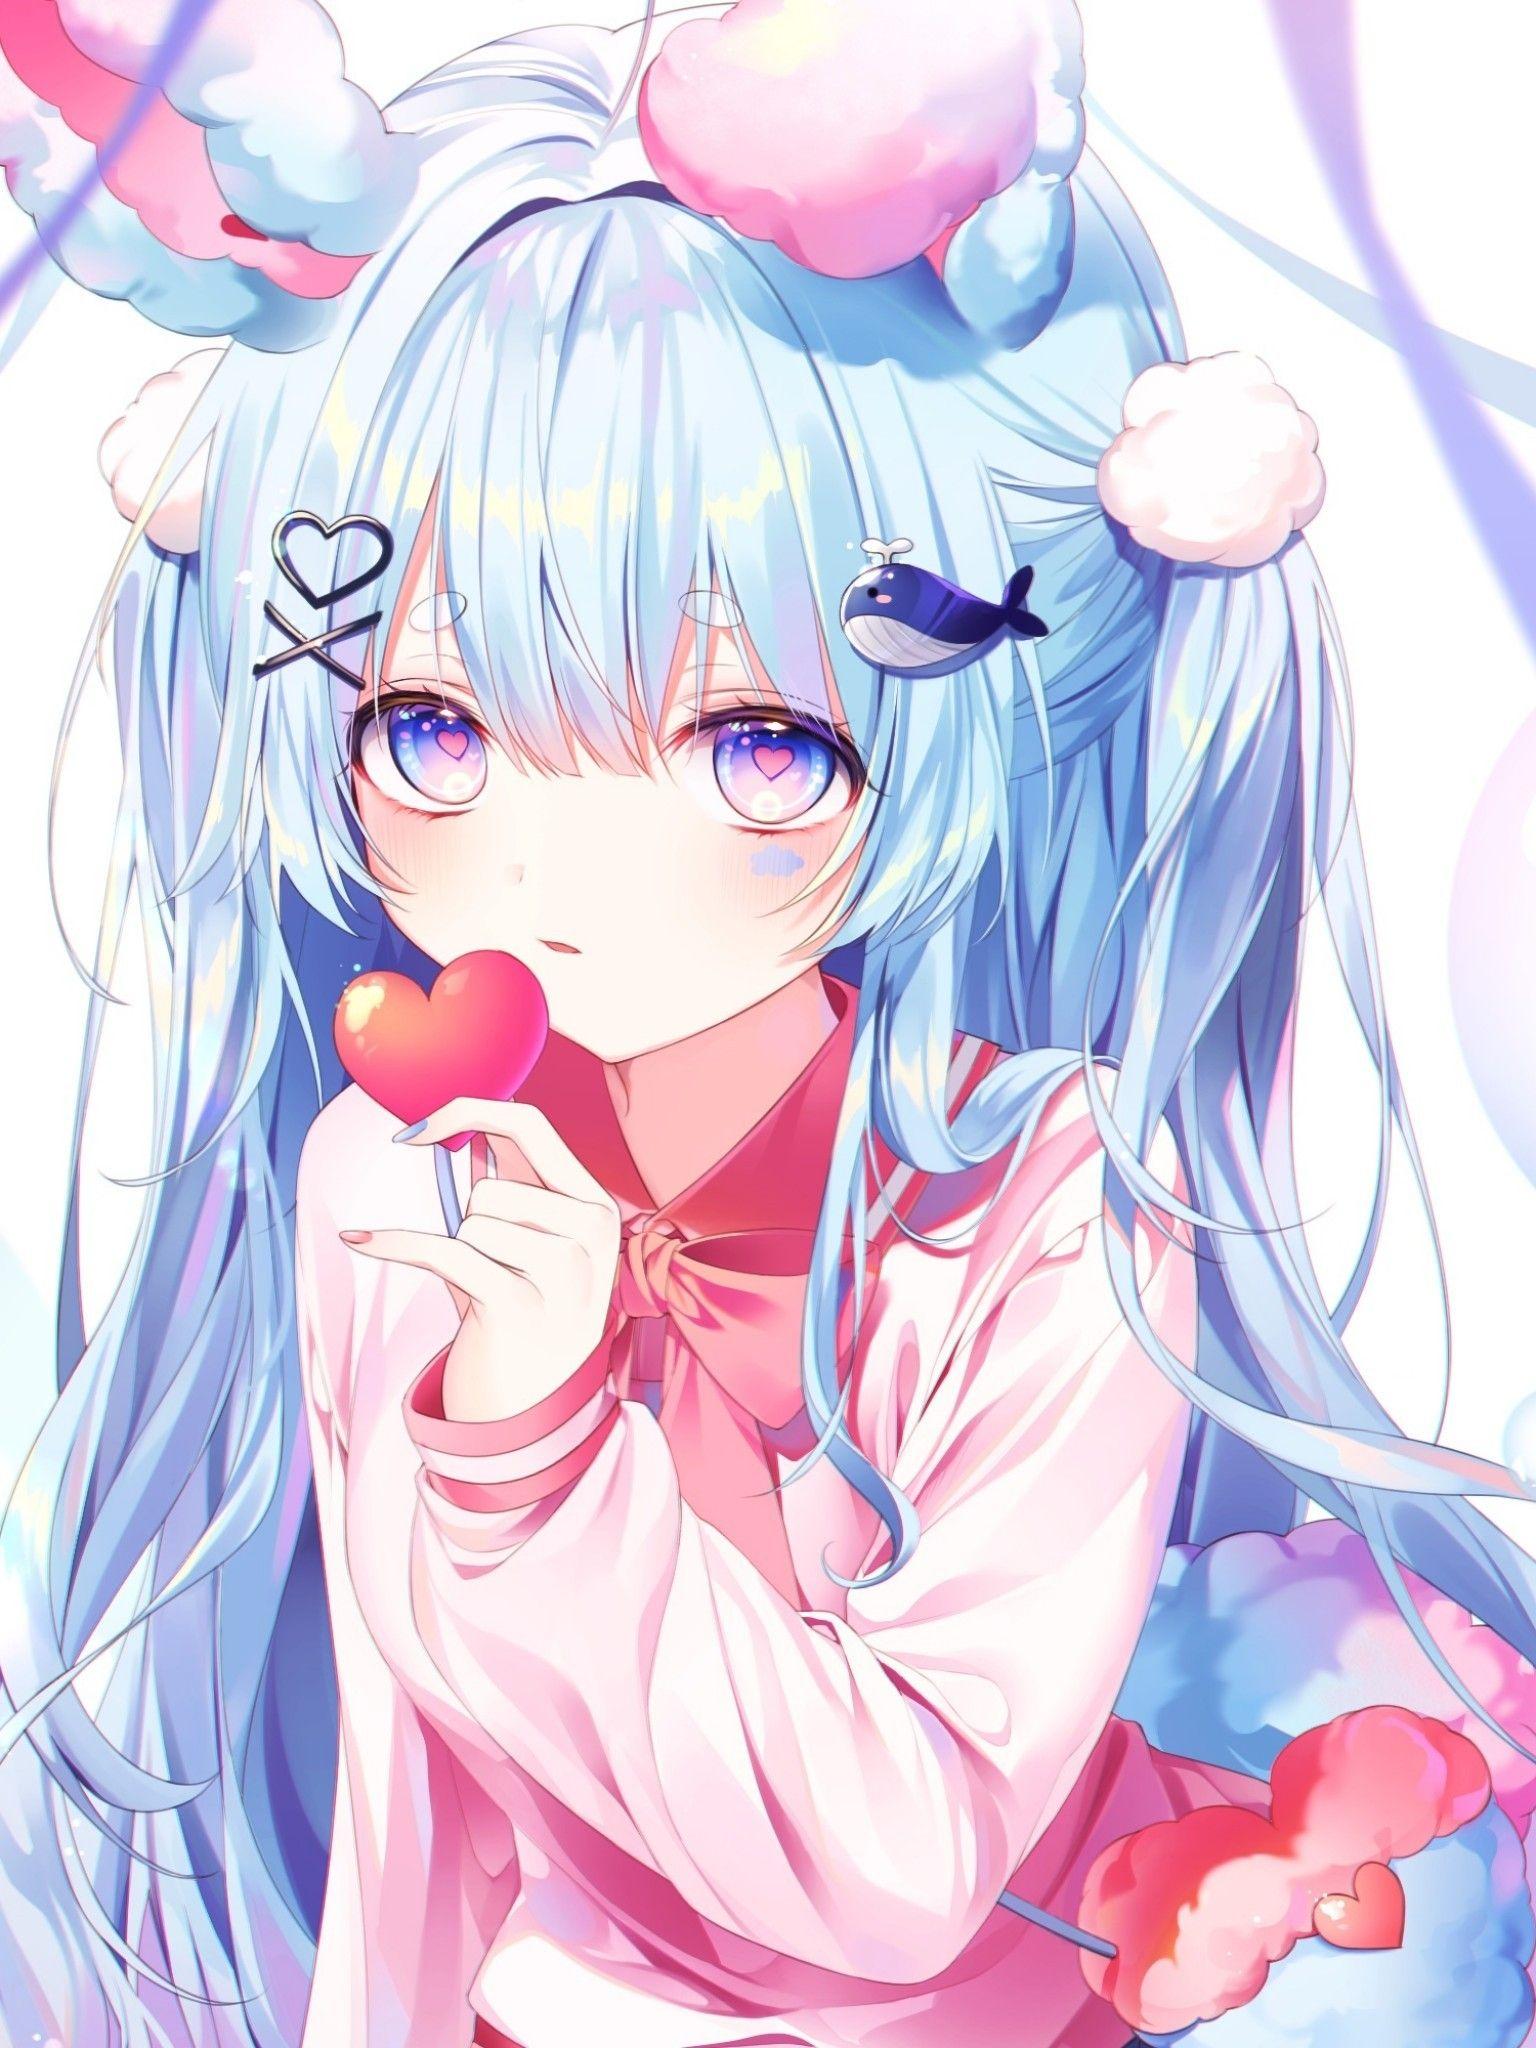 Cute bunny girl and pink anime 917783 on animeshercom